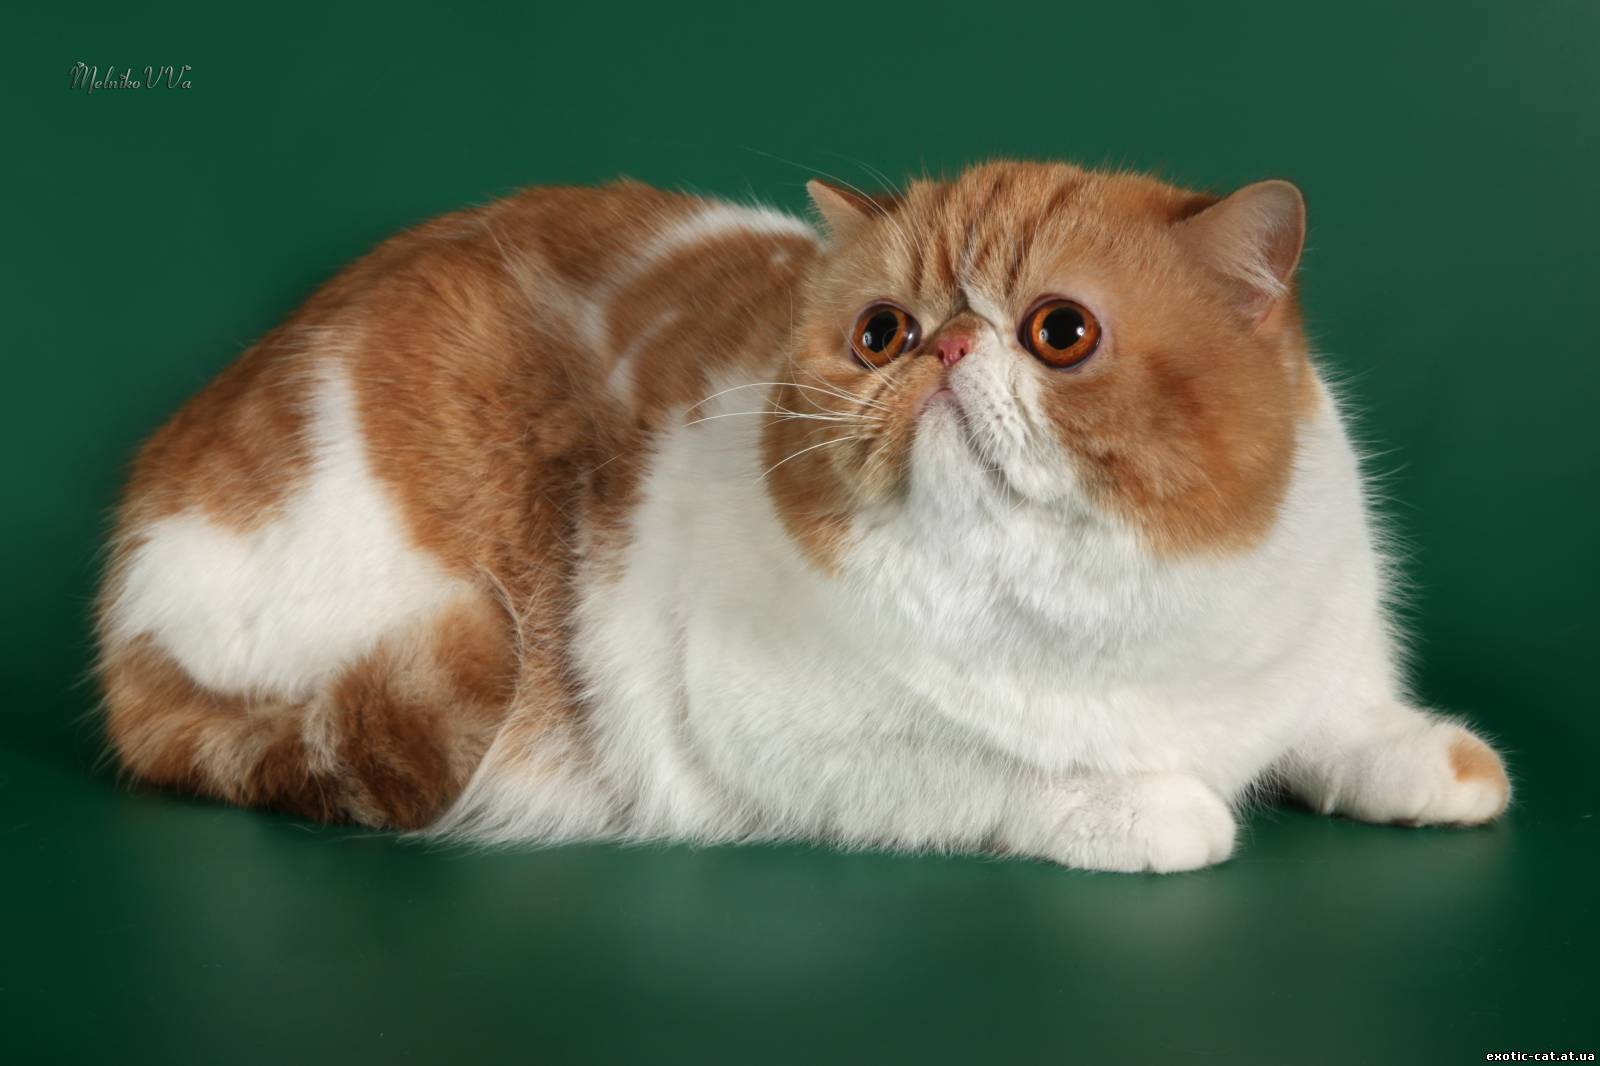 Экзотическая кошка: описание породы, характер, советы по содержанию и уходу, фото экзотов